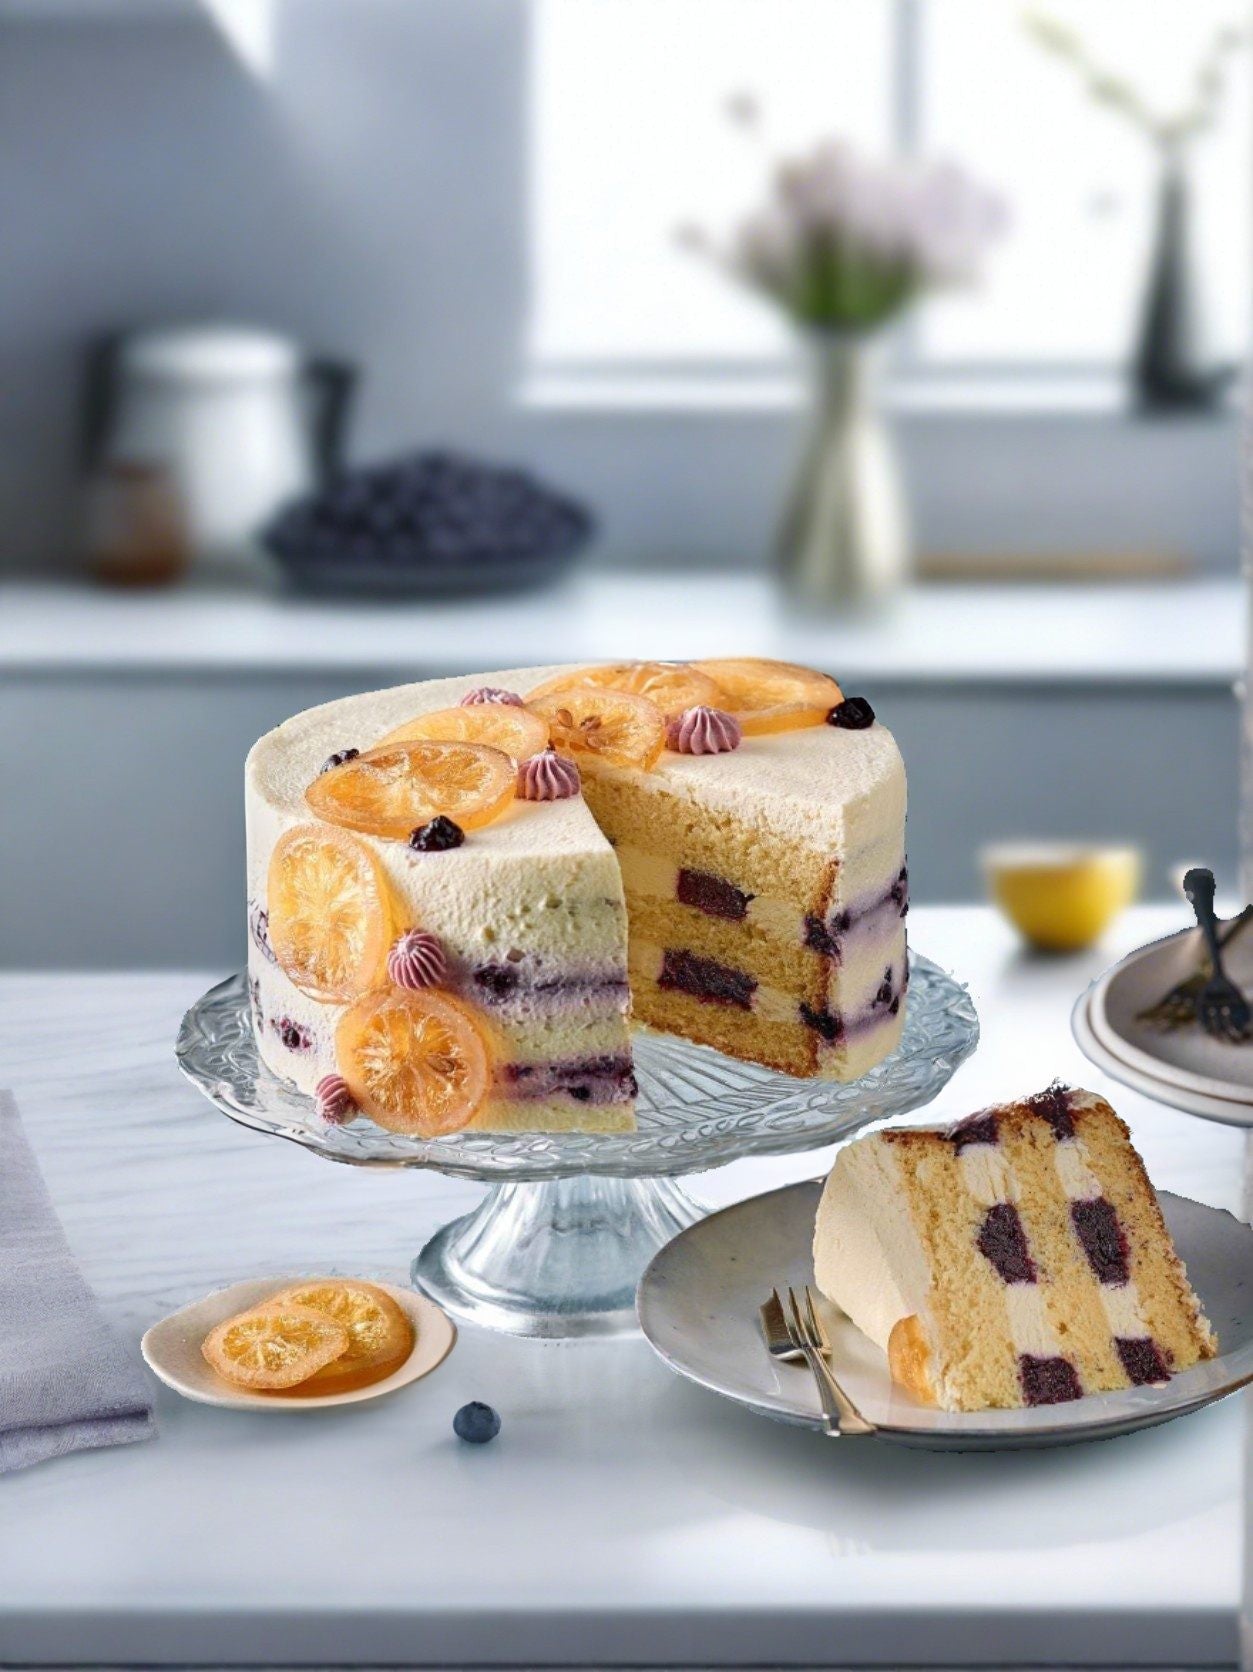 Lemon & Blueberry Dream Cake - Patisserie Valerie